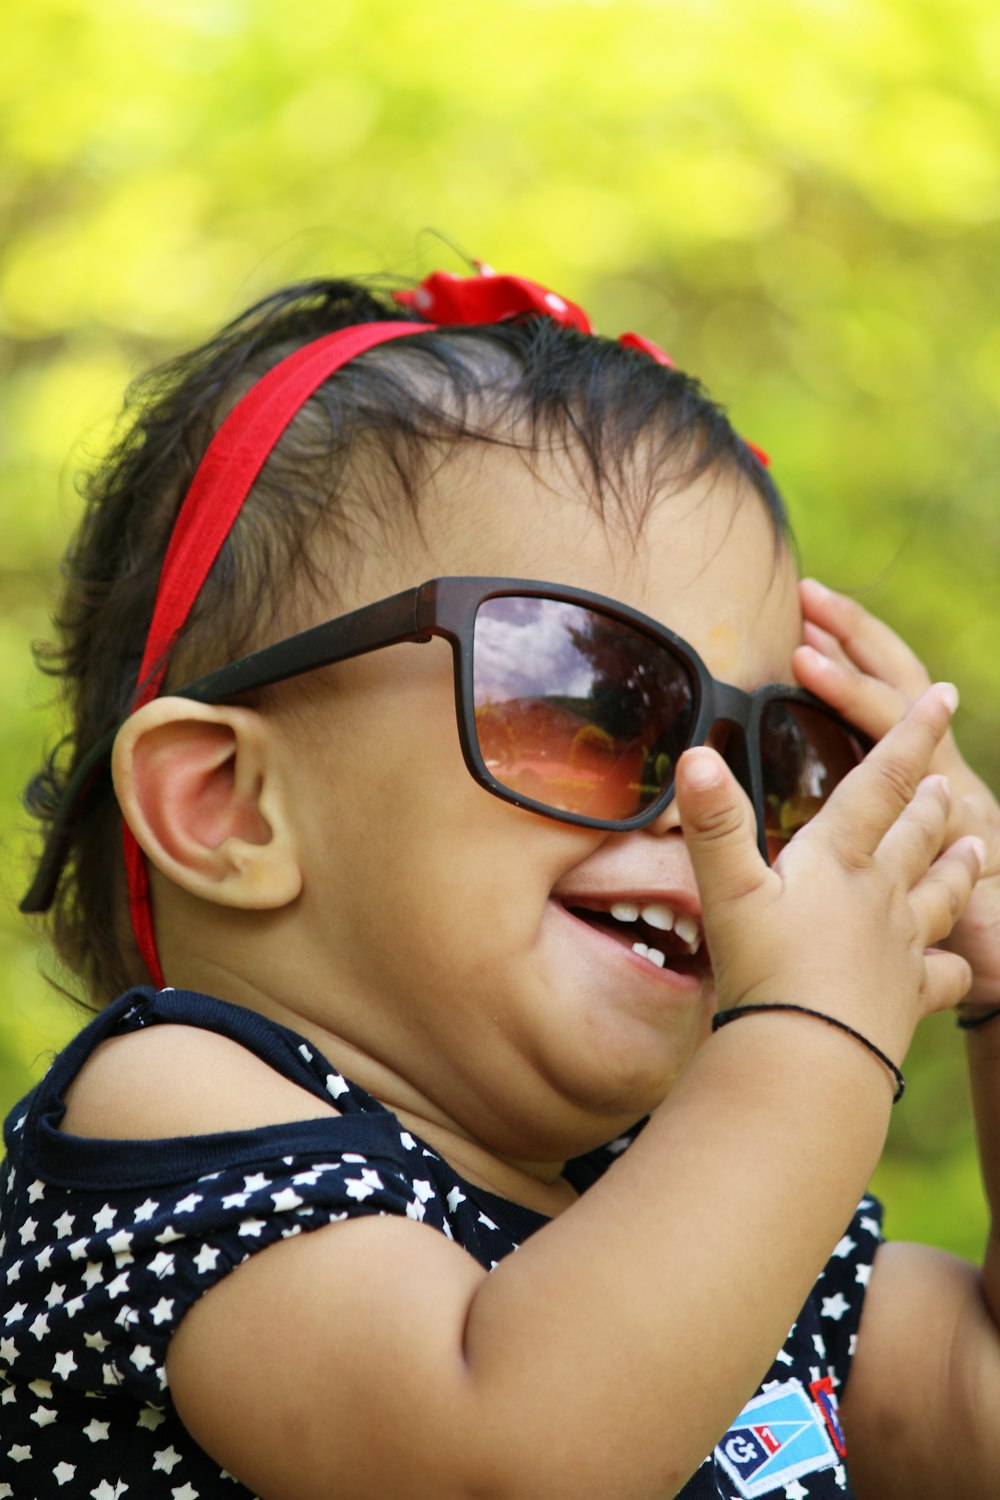 Niños Felices Con Gafas De Sol En La Piscina Imagen de archivo